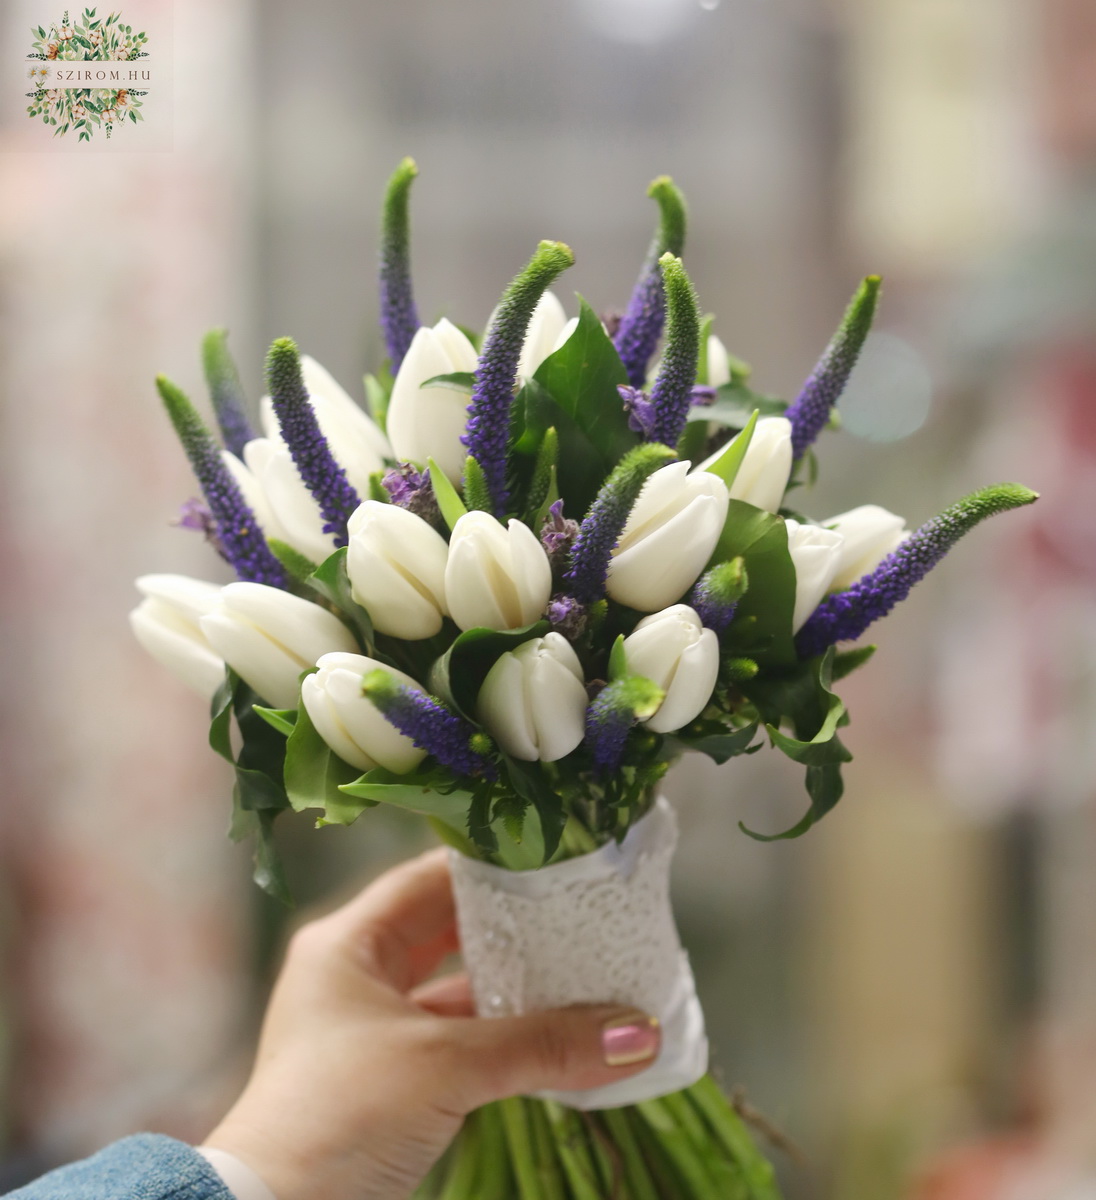 Blumenlieferung nach Budapest - Brautstrauß (Tulpe, Veronika, Weiß, Lila)